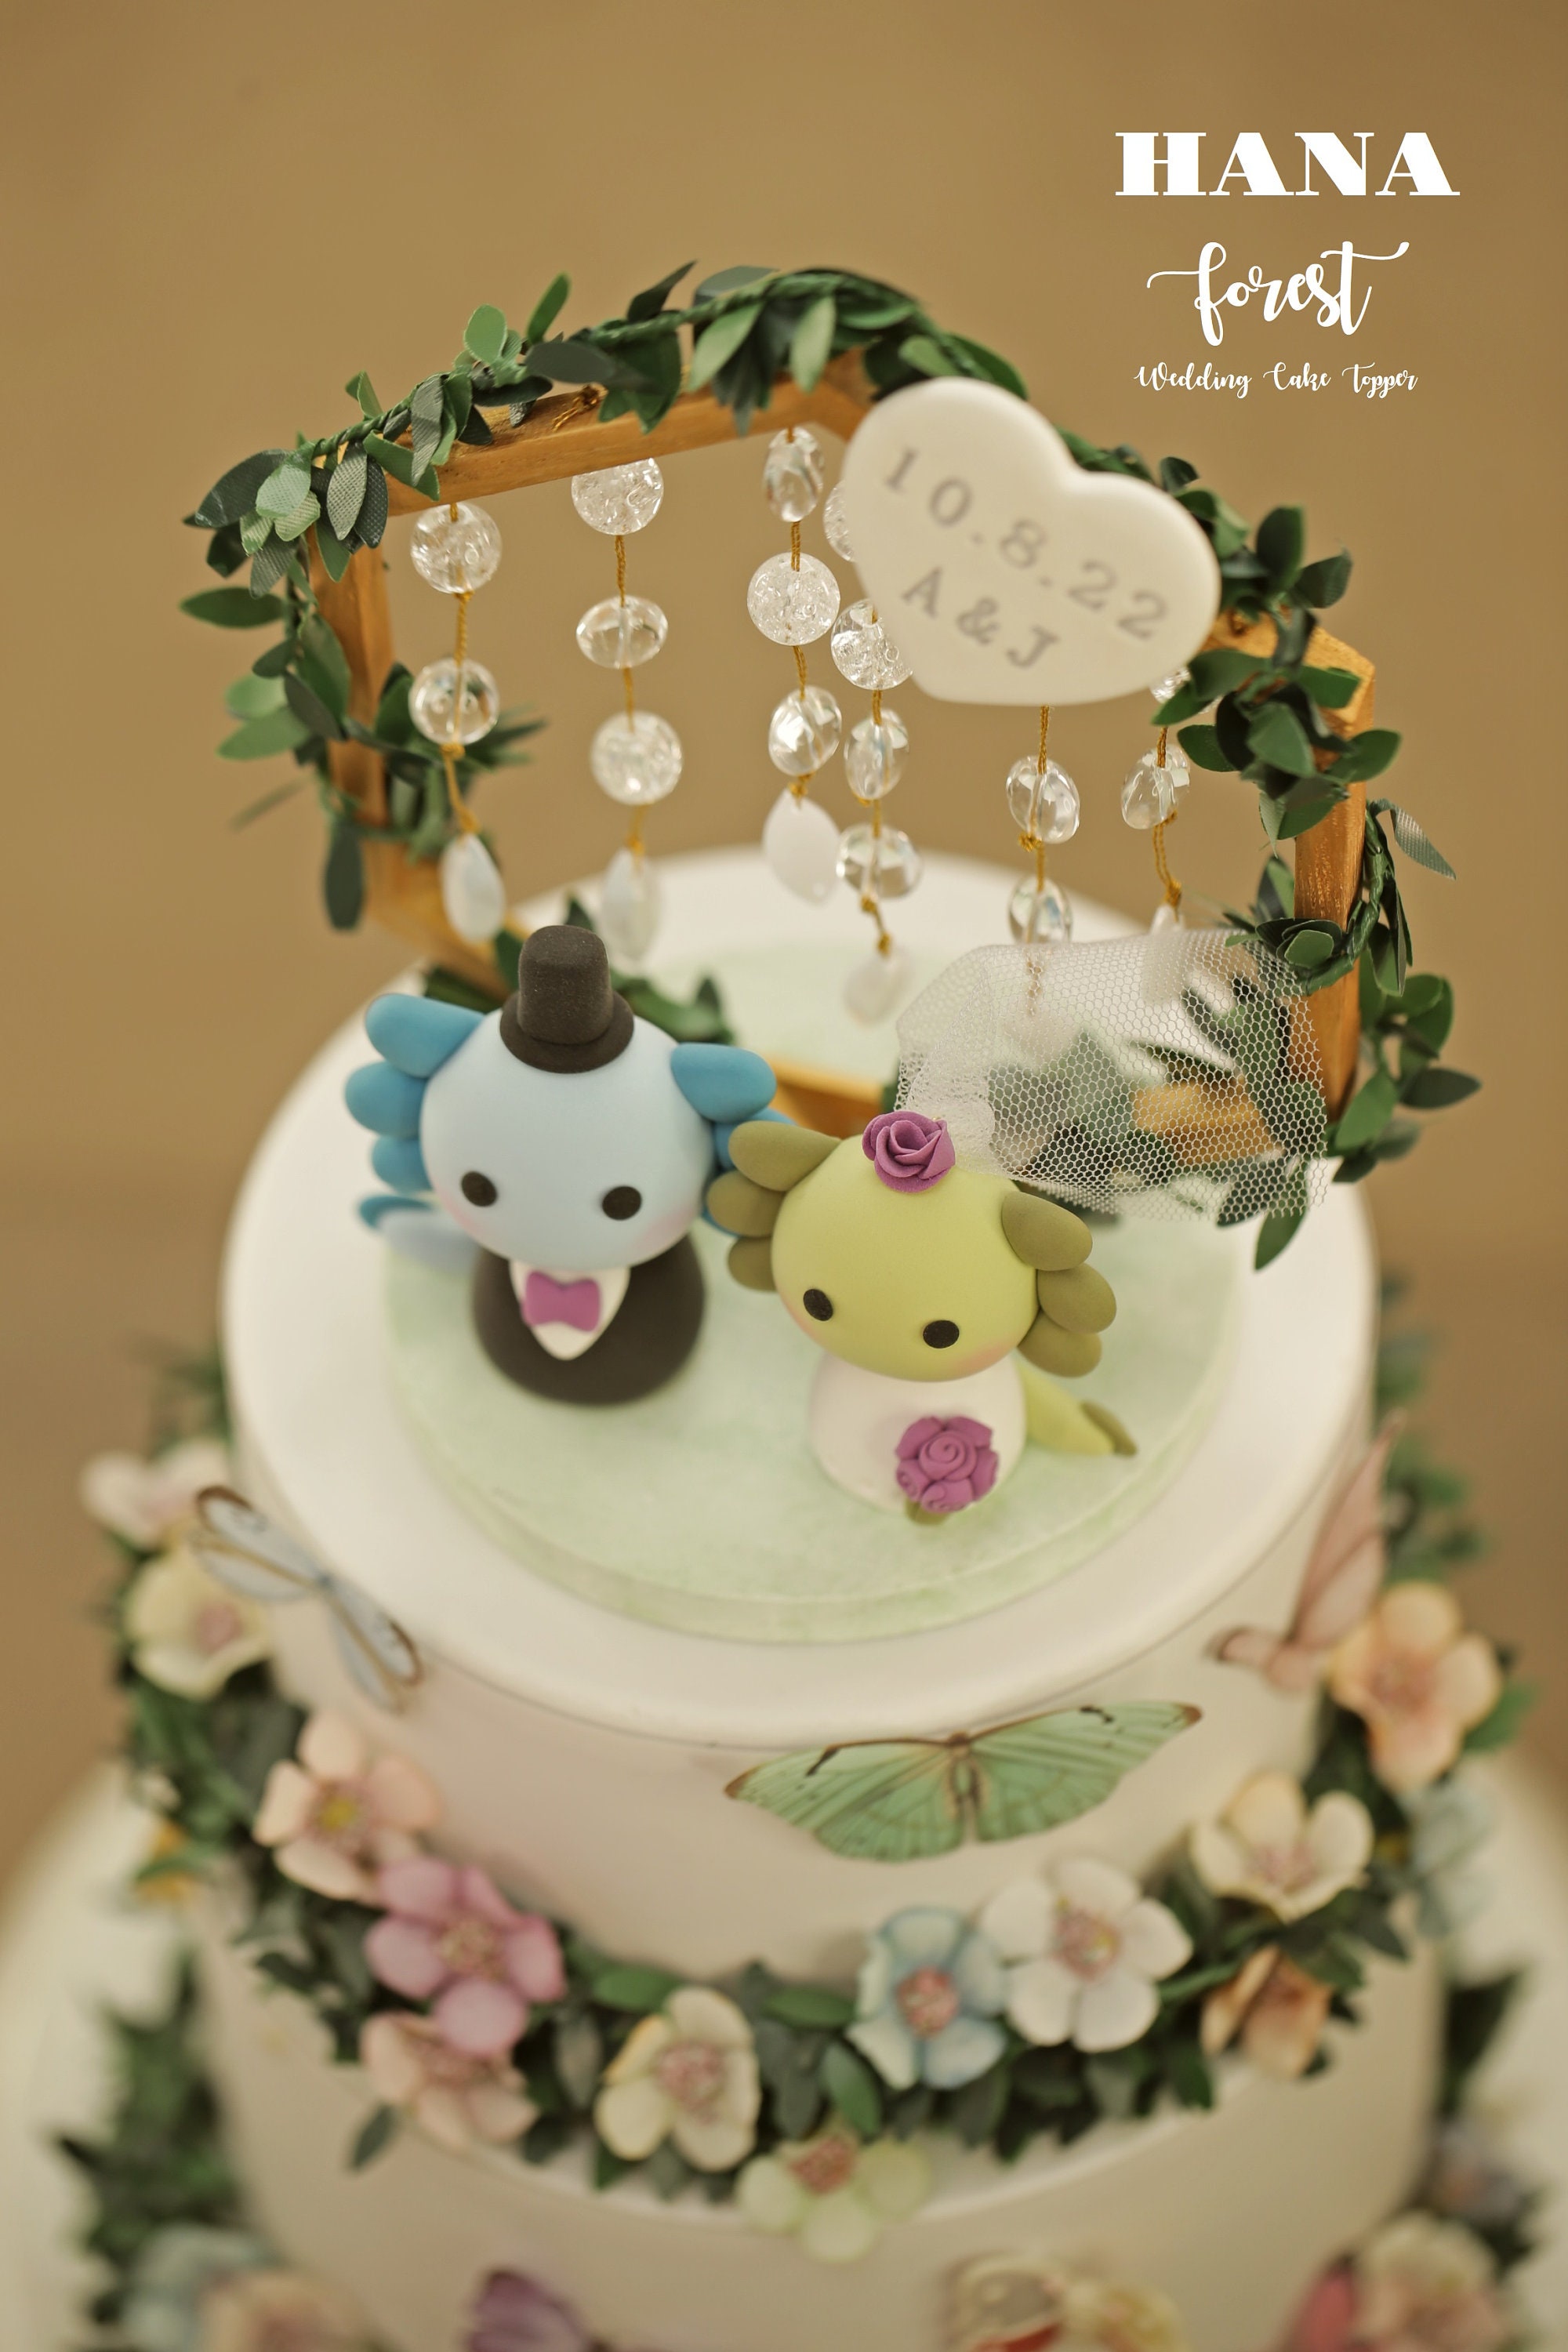 Axolotl Wedding Cake Topper,bride and Groom Cake Topper,handmade Couple  Cake Topper,custom Wedding Cake Topper,birthday Cake Topper 